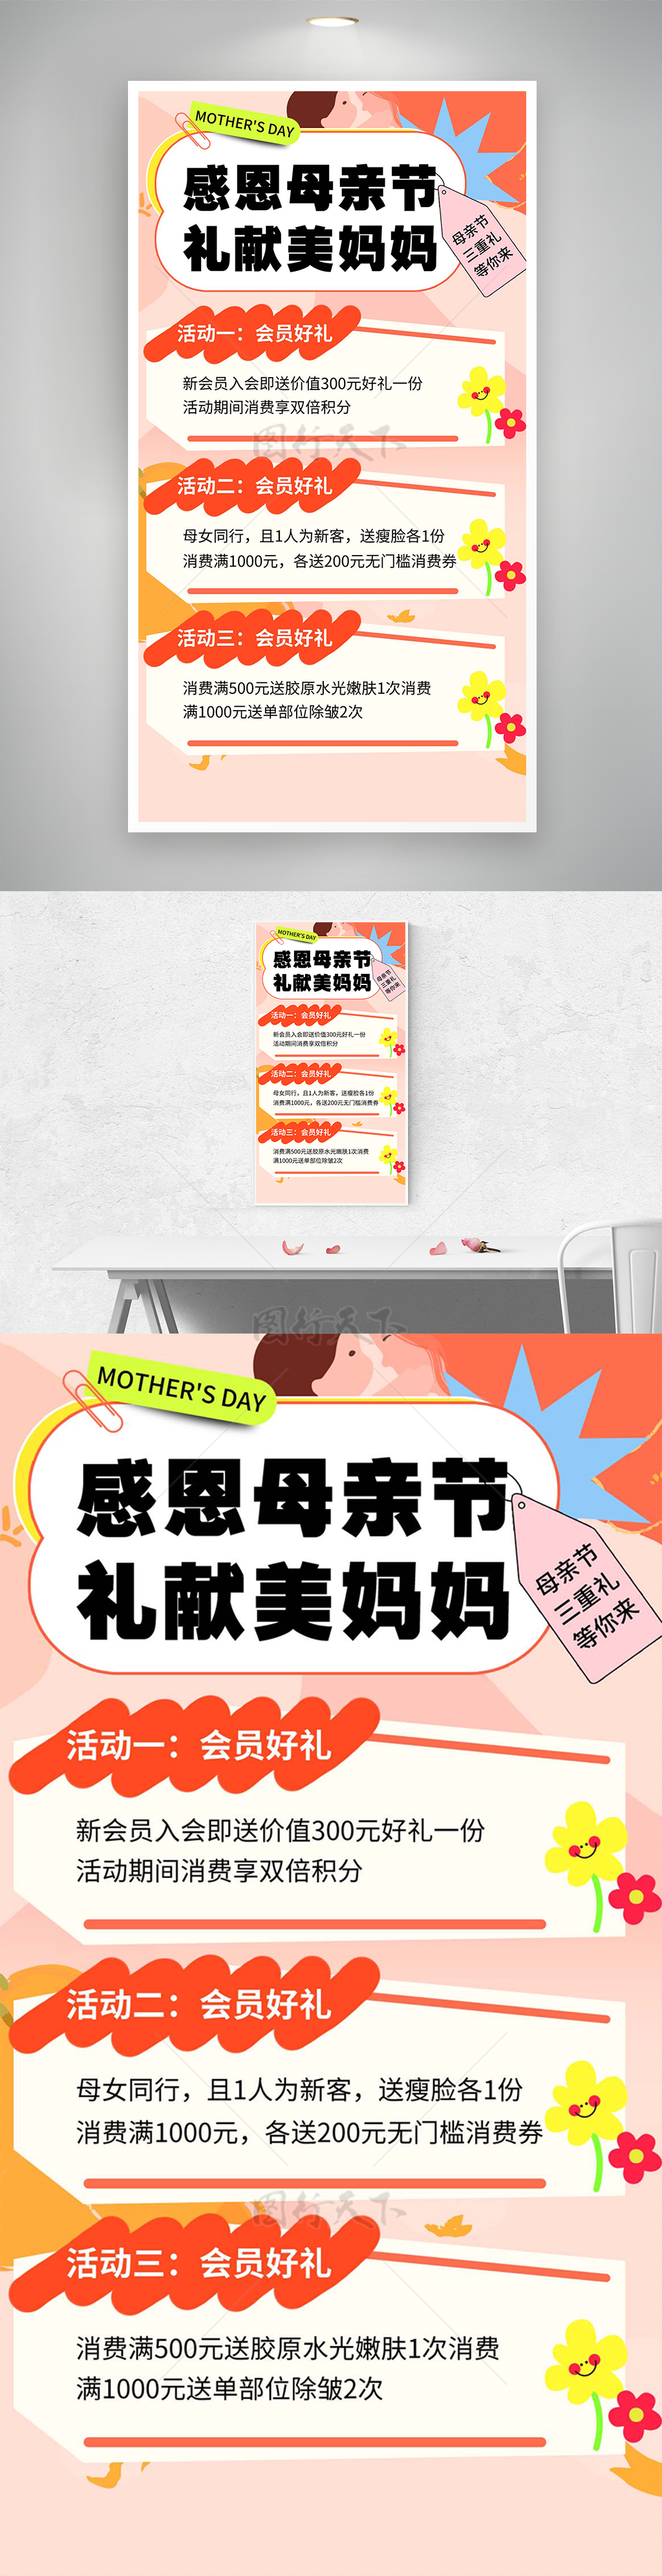 礼献最美妈妈母亲节简约促销活动海报